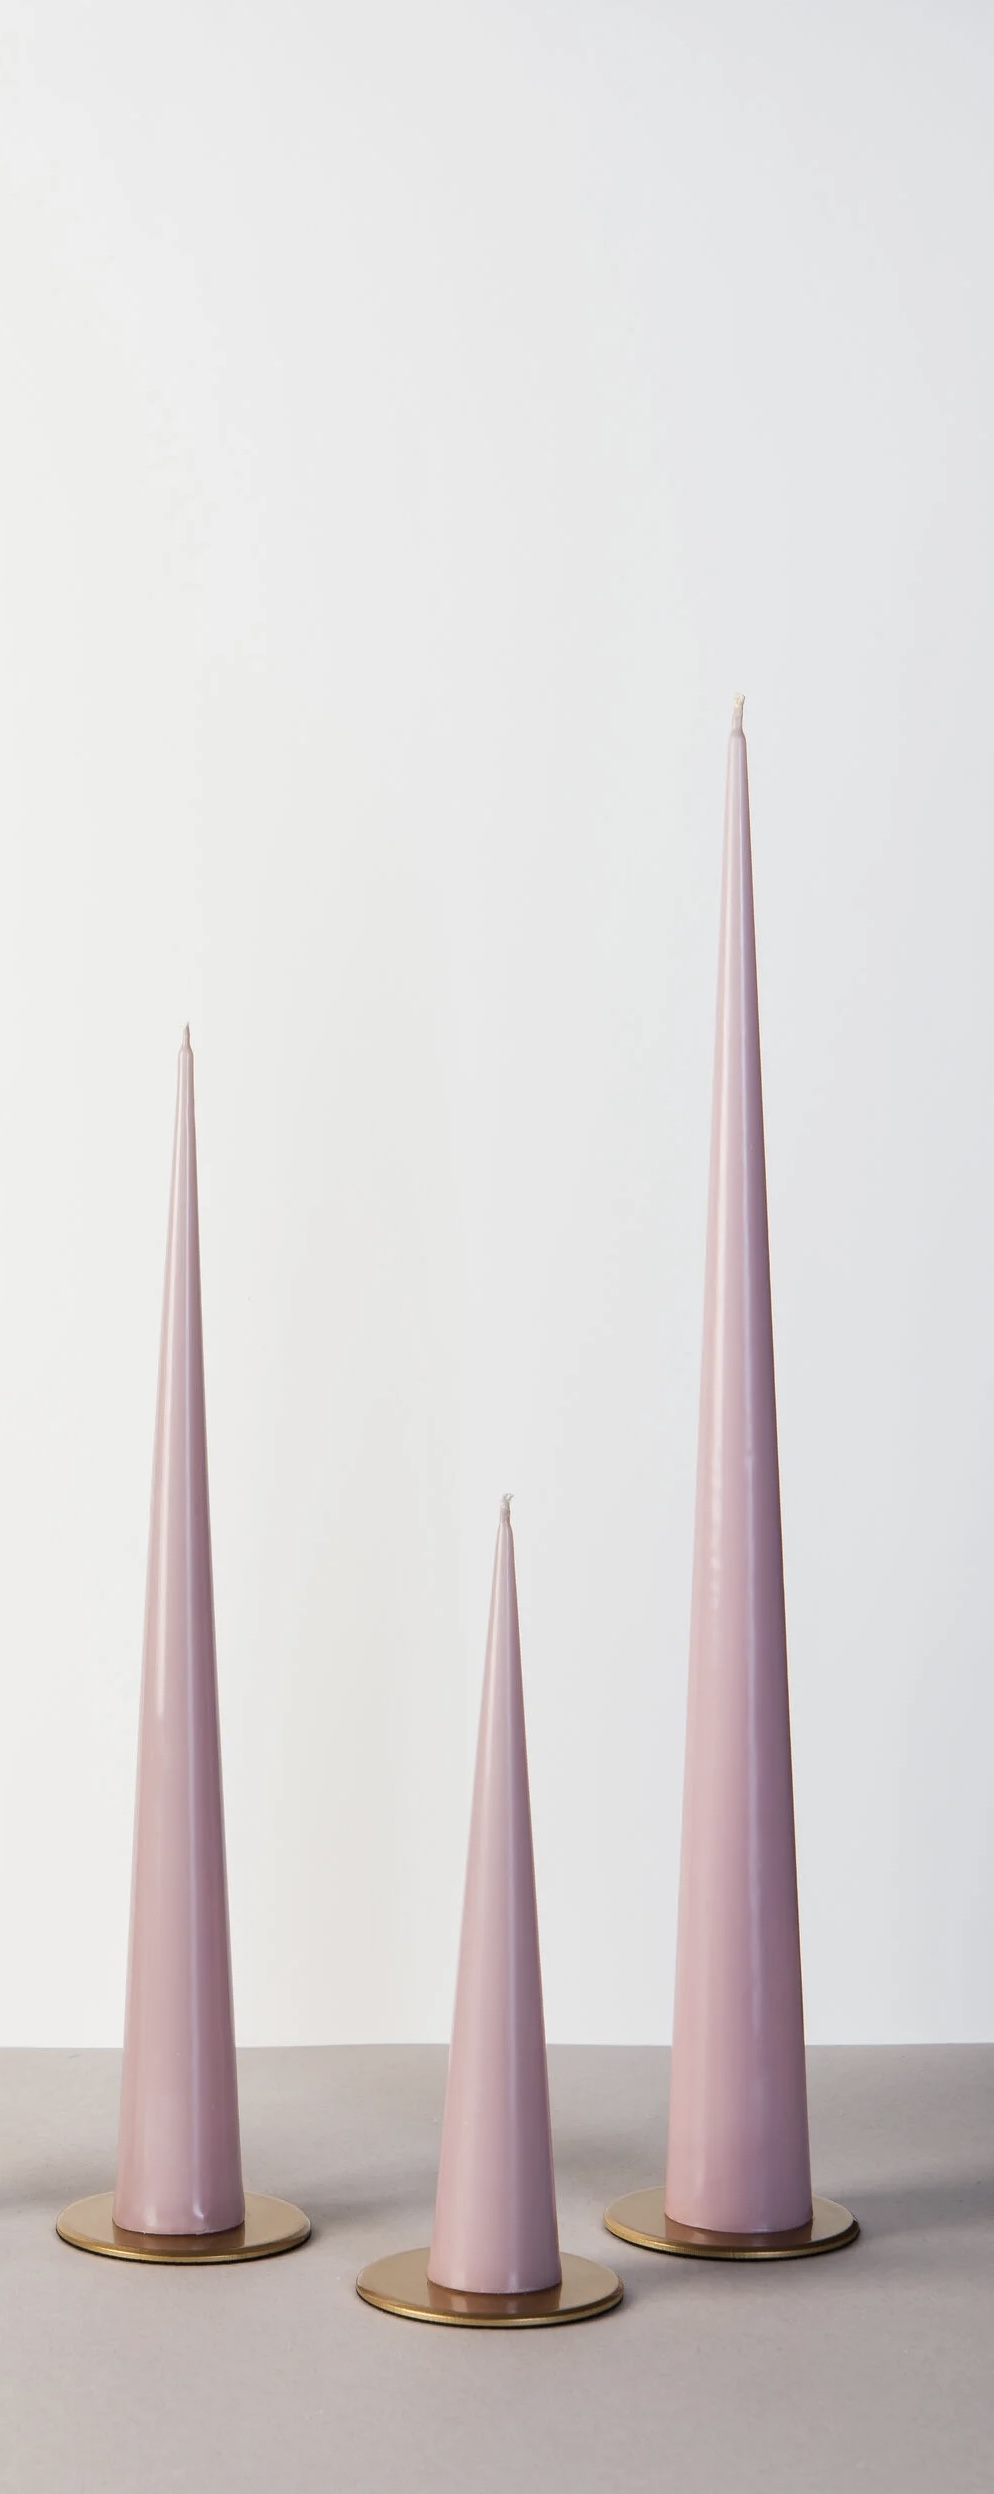 ALD004-7, Свеча конусная (17 часов), 36х4,5 см, холодный розовый, 2009980180458,4627197642583